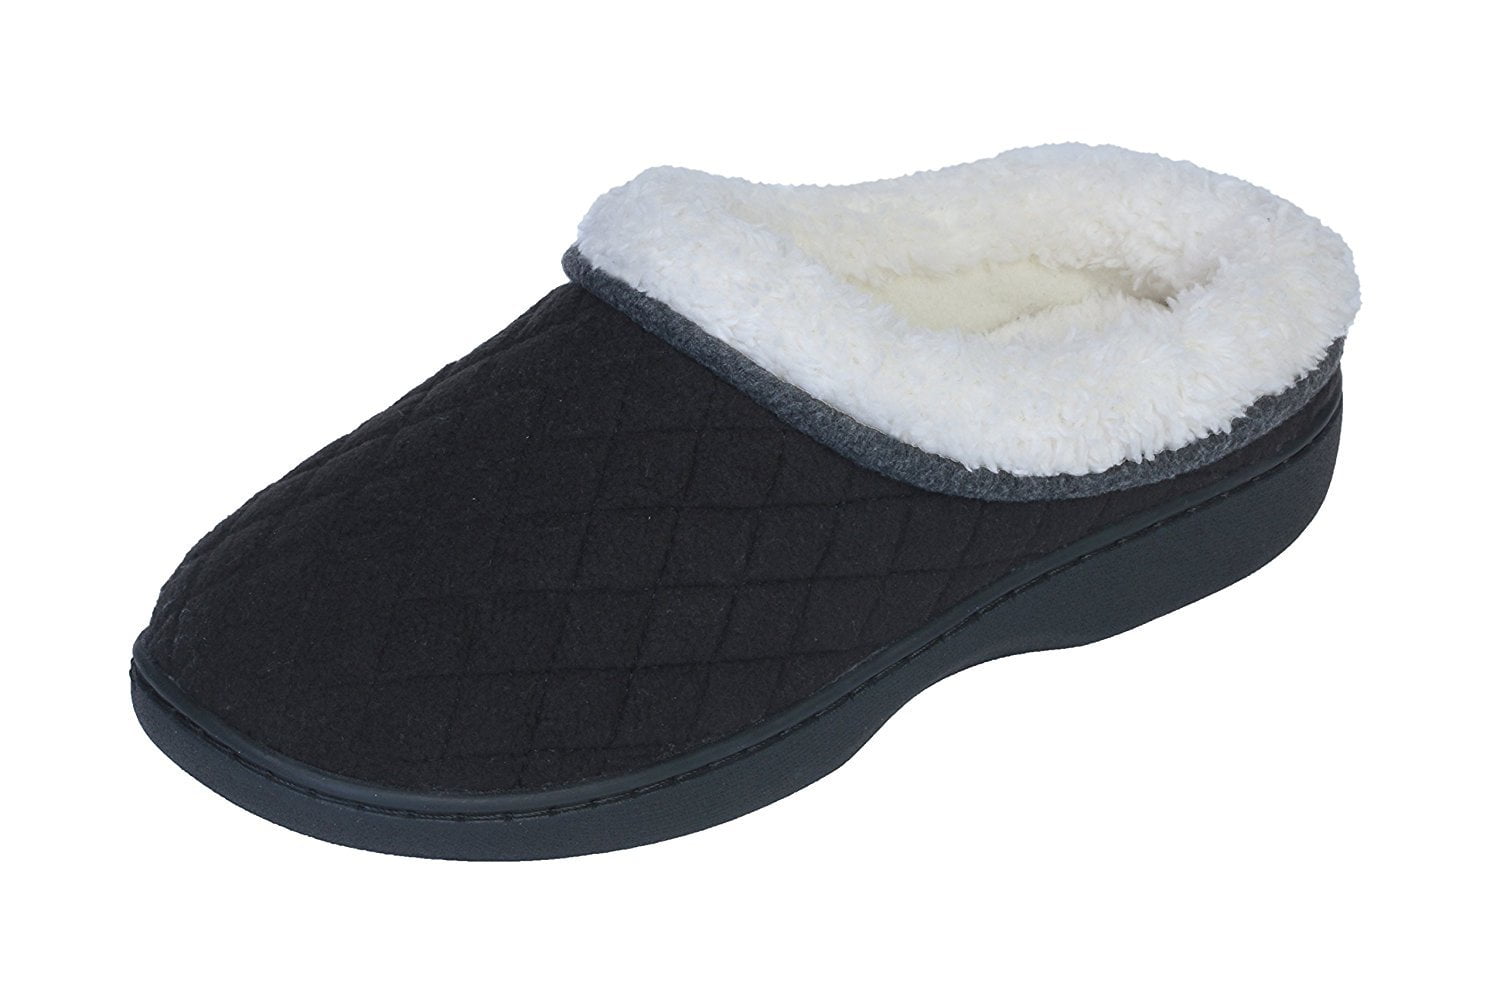 walmart slip on shoes memory foam